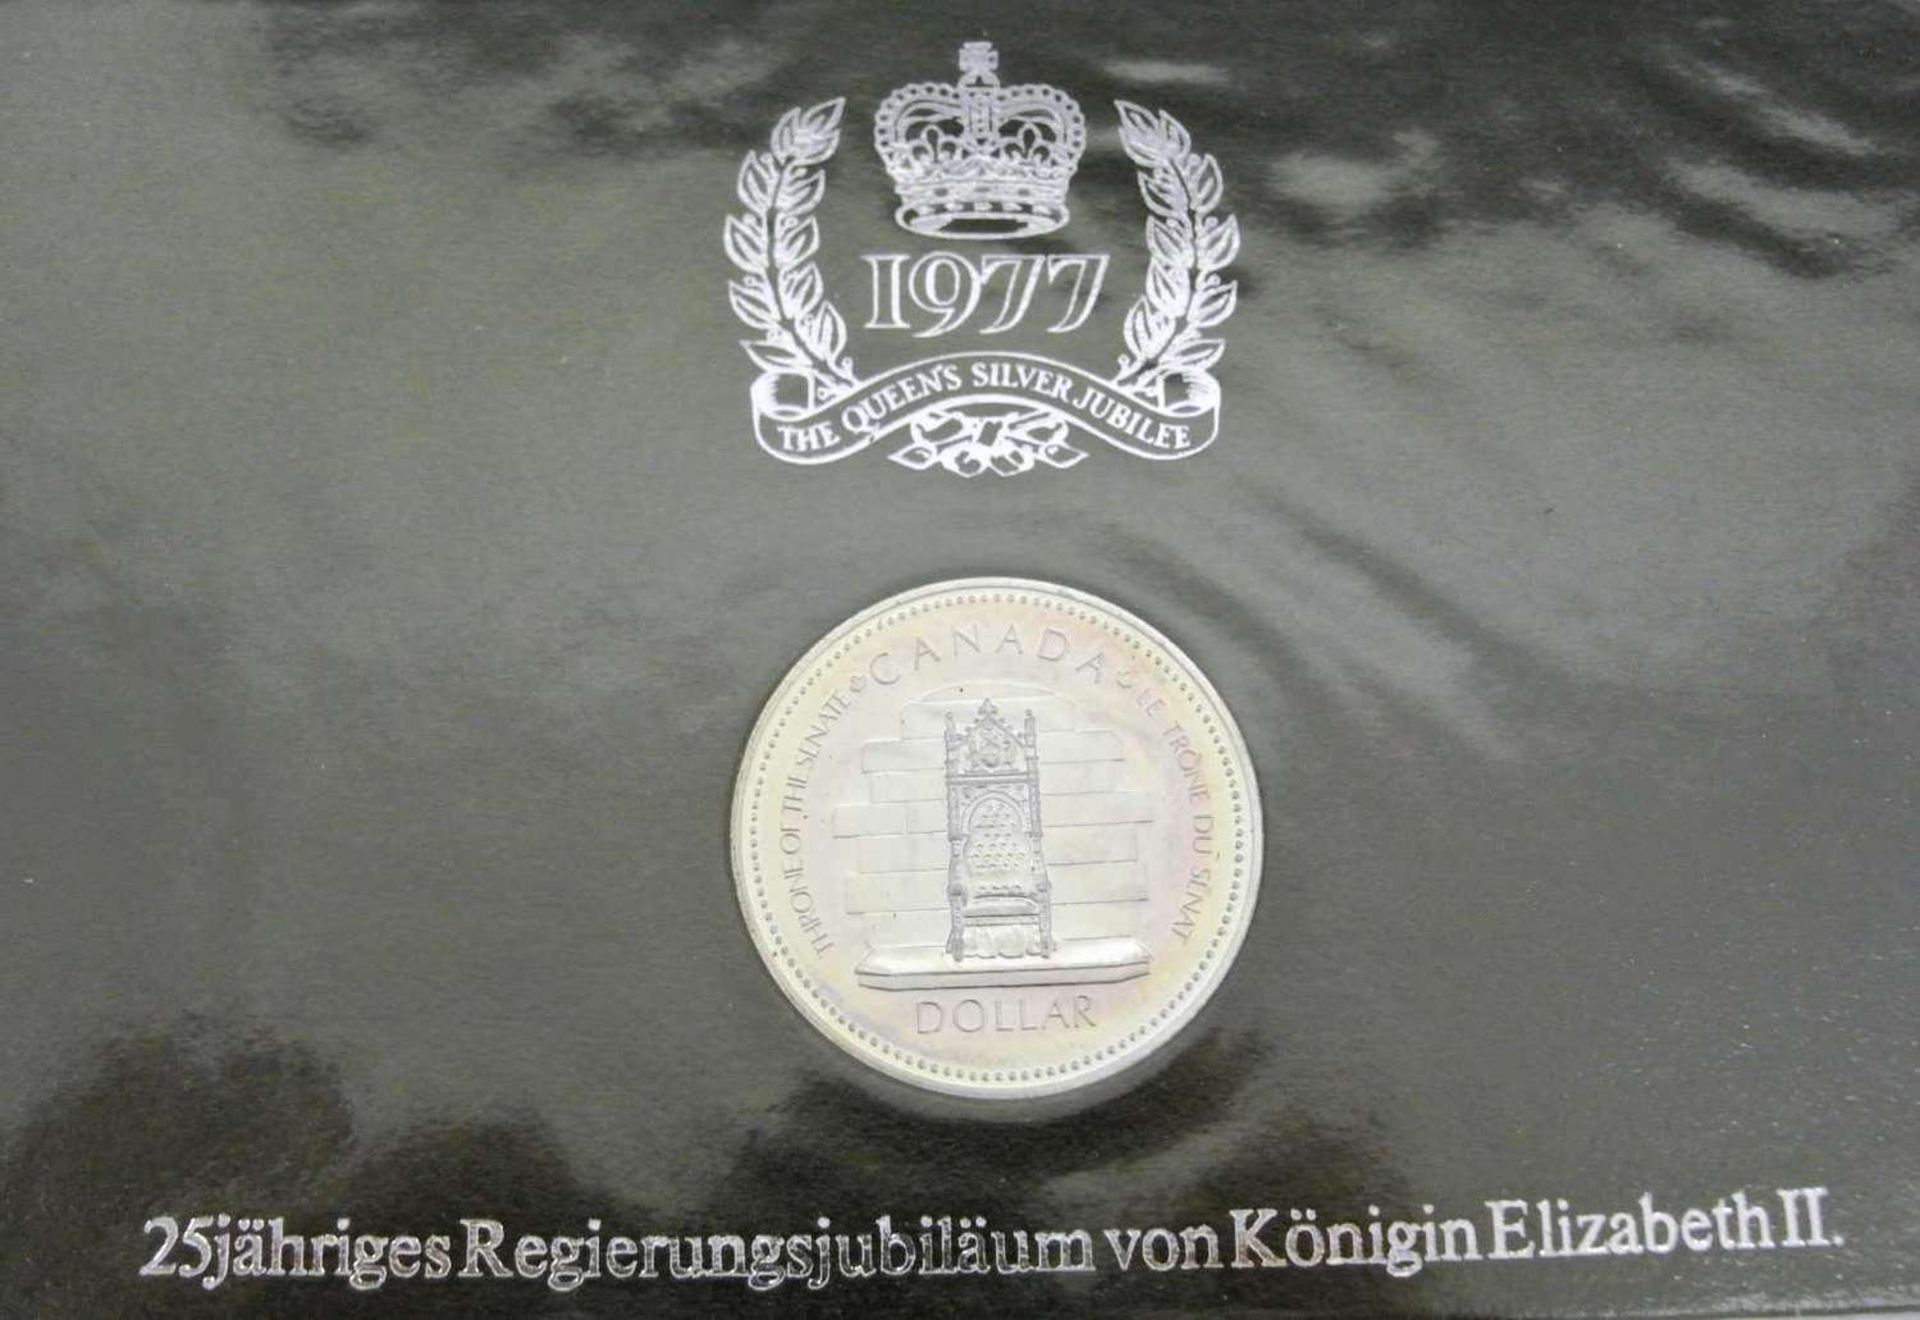 Lot Münzen 1977, 25jähriges Regierungsjubiläum von Königin Elisabeth II., dabei 1x1 Dollar Kanada - Bild 2 aus 5